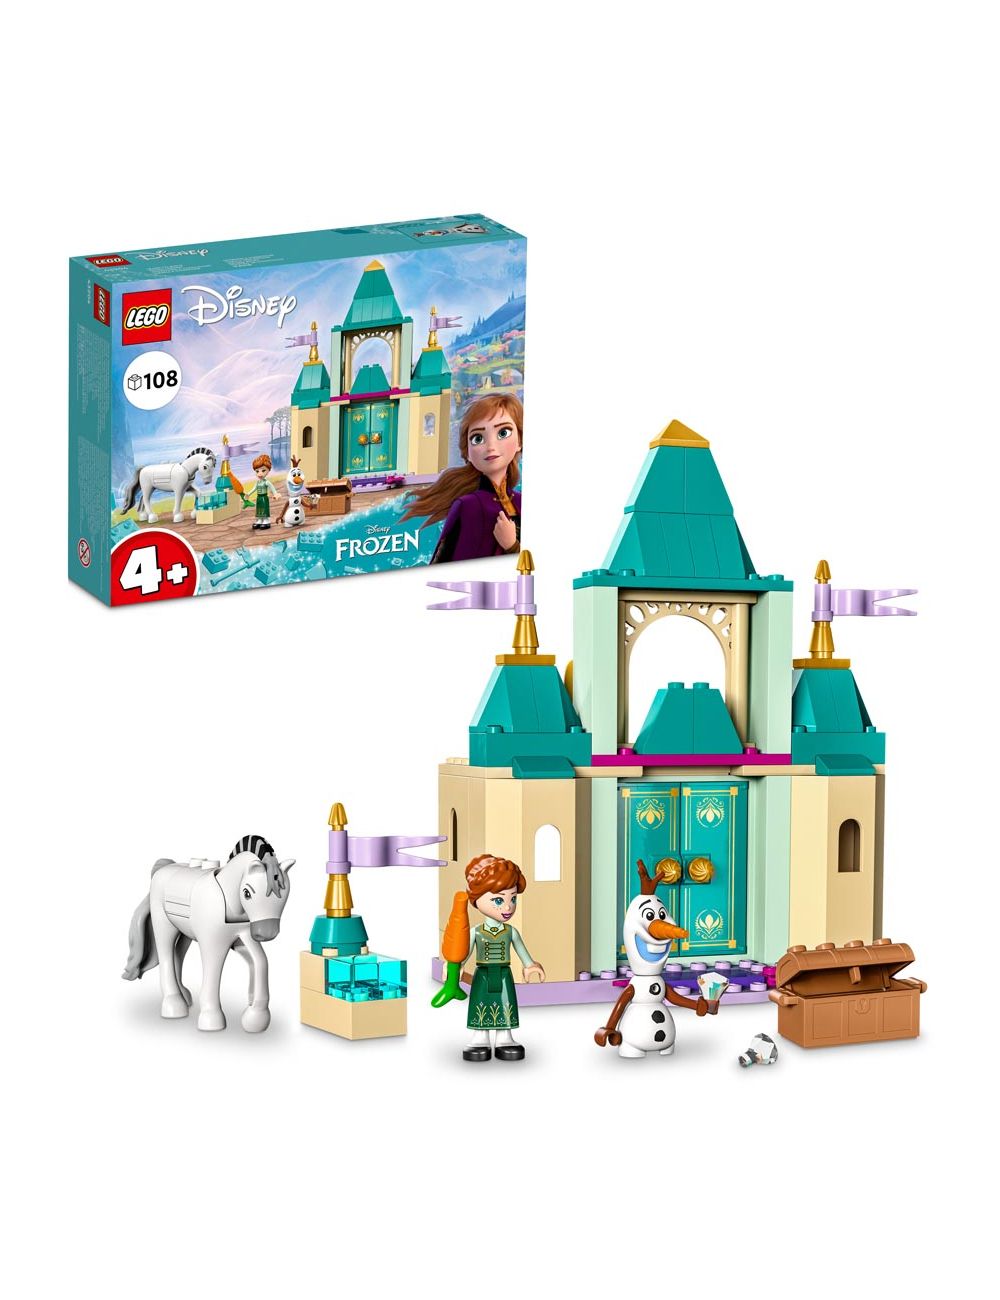 LEGO Disney Frozen Zabawa w zamku z Anną i Olafem 43204